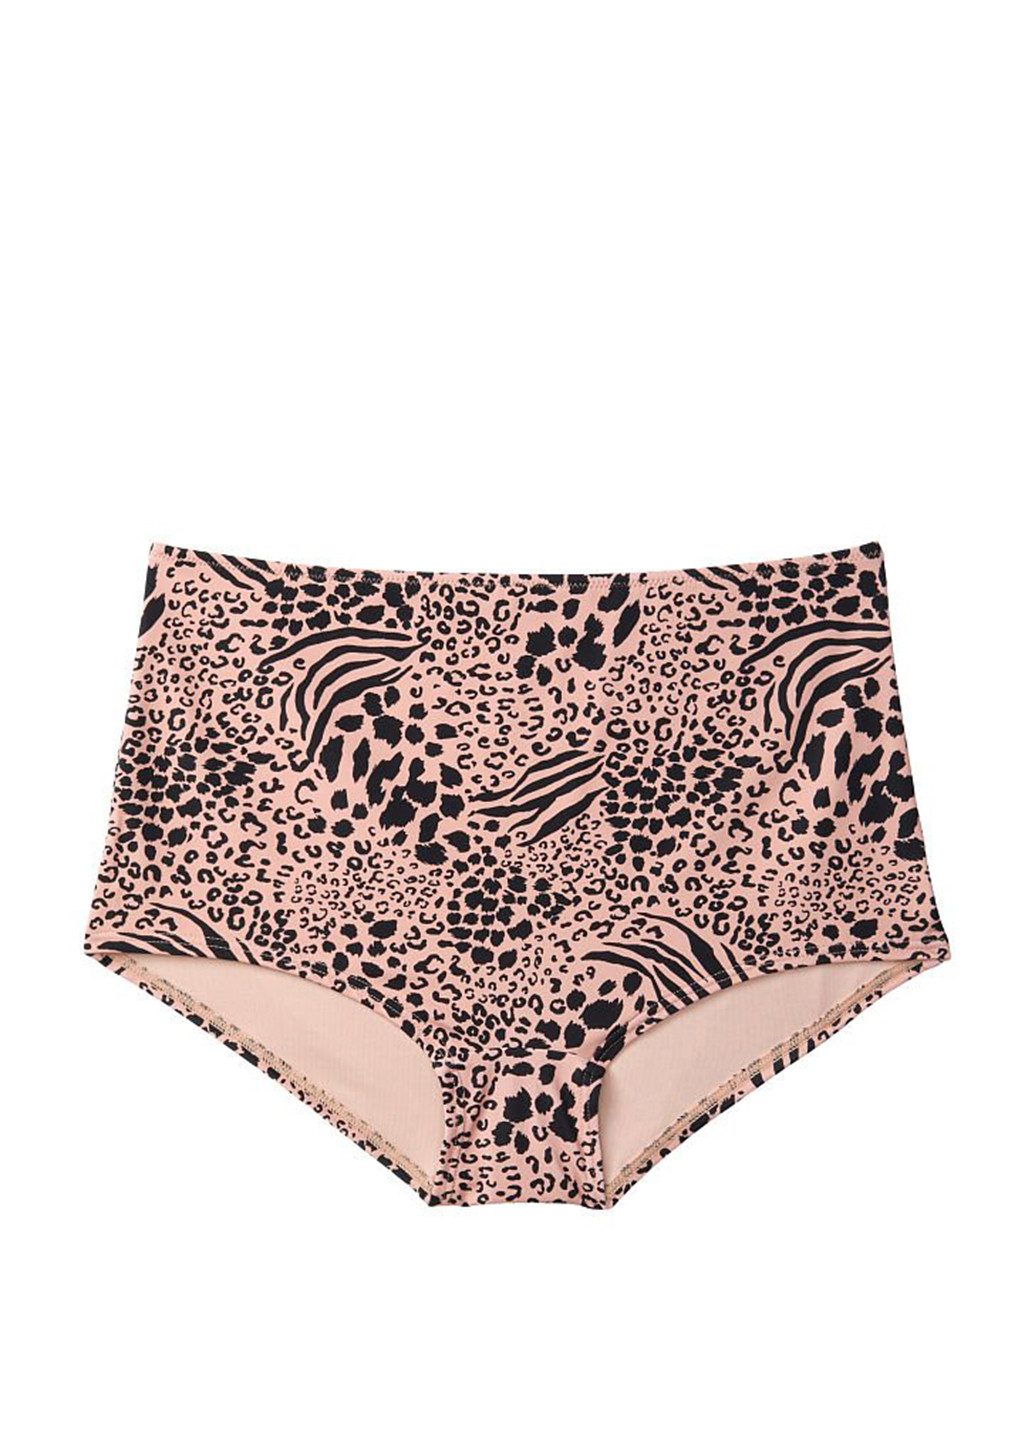 Розово-коричневый летний купальник (лиф, плавки) топ, раздельный Victoria's Secret